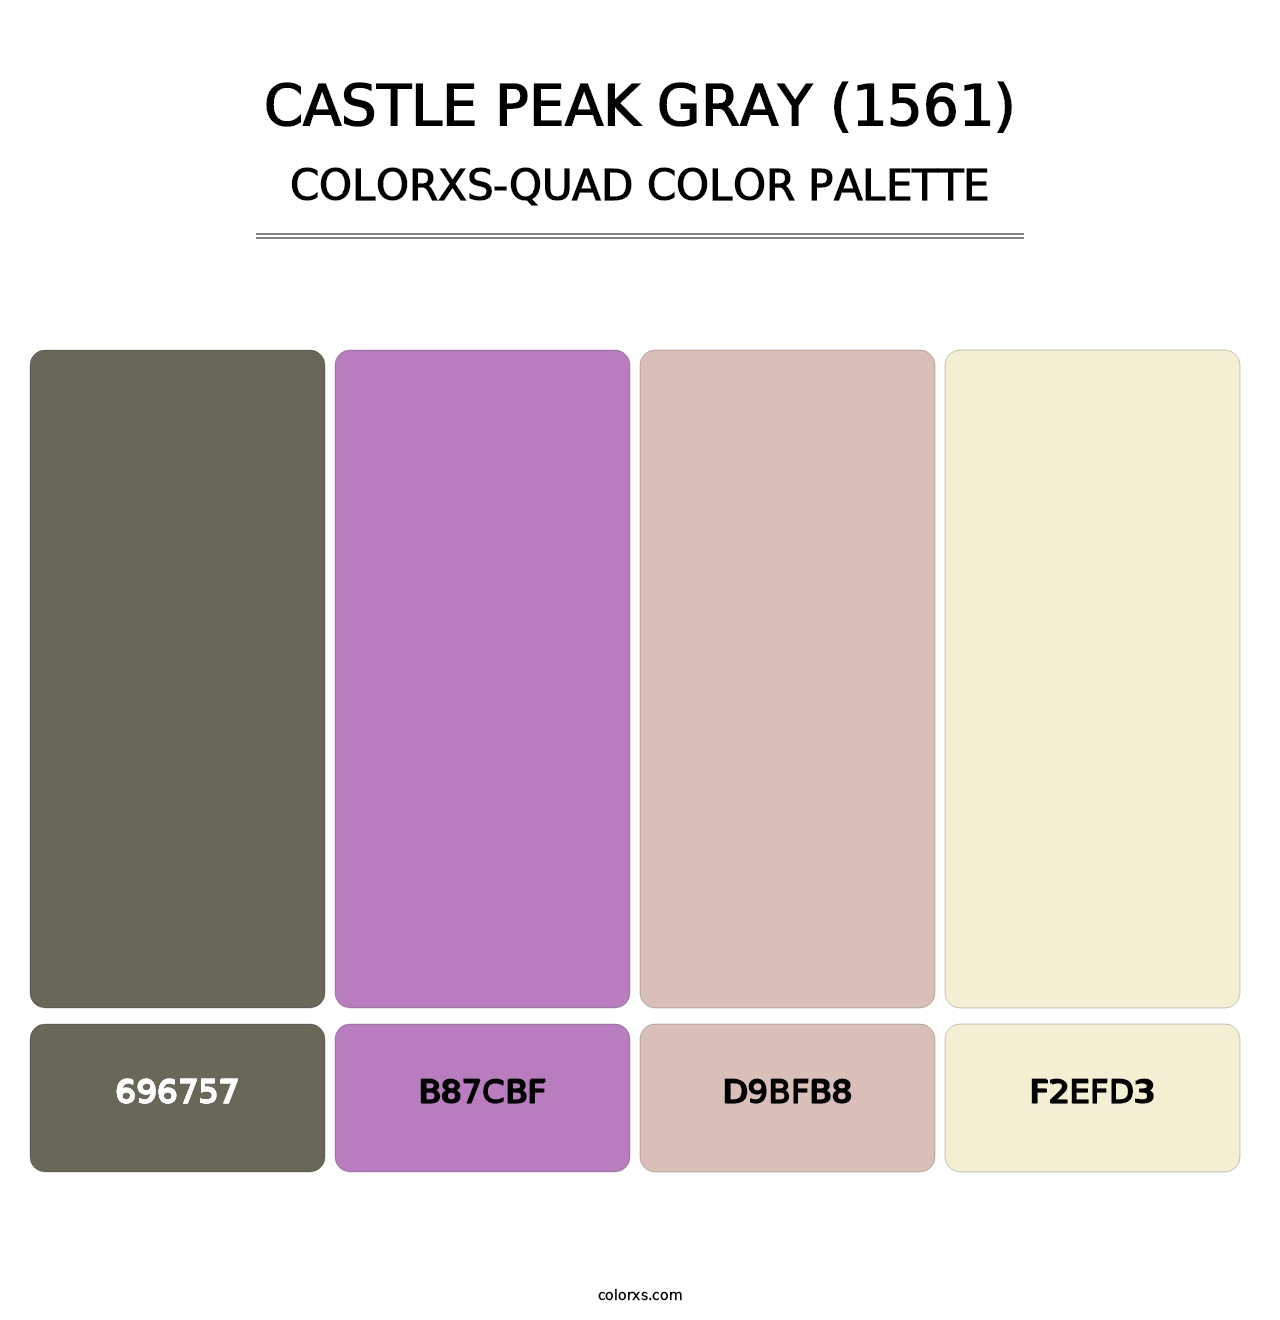 Castle Peak Gray (1561) - Colorxs Quad Palette